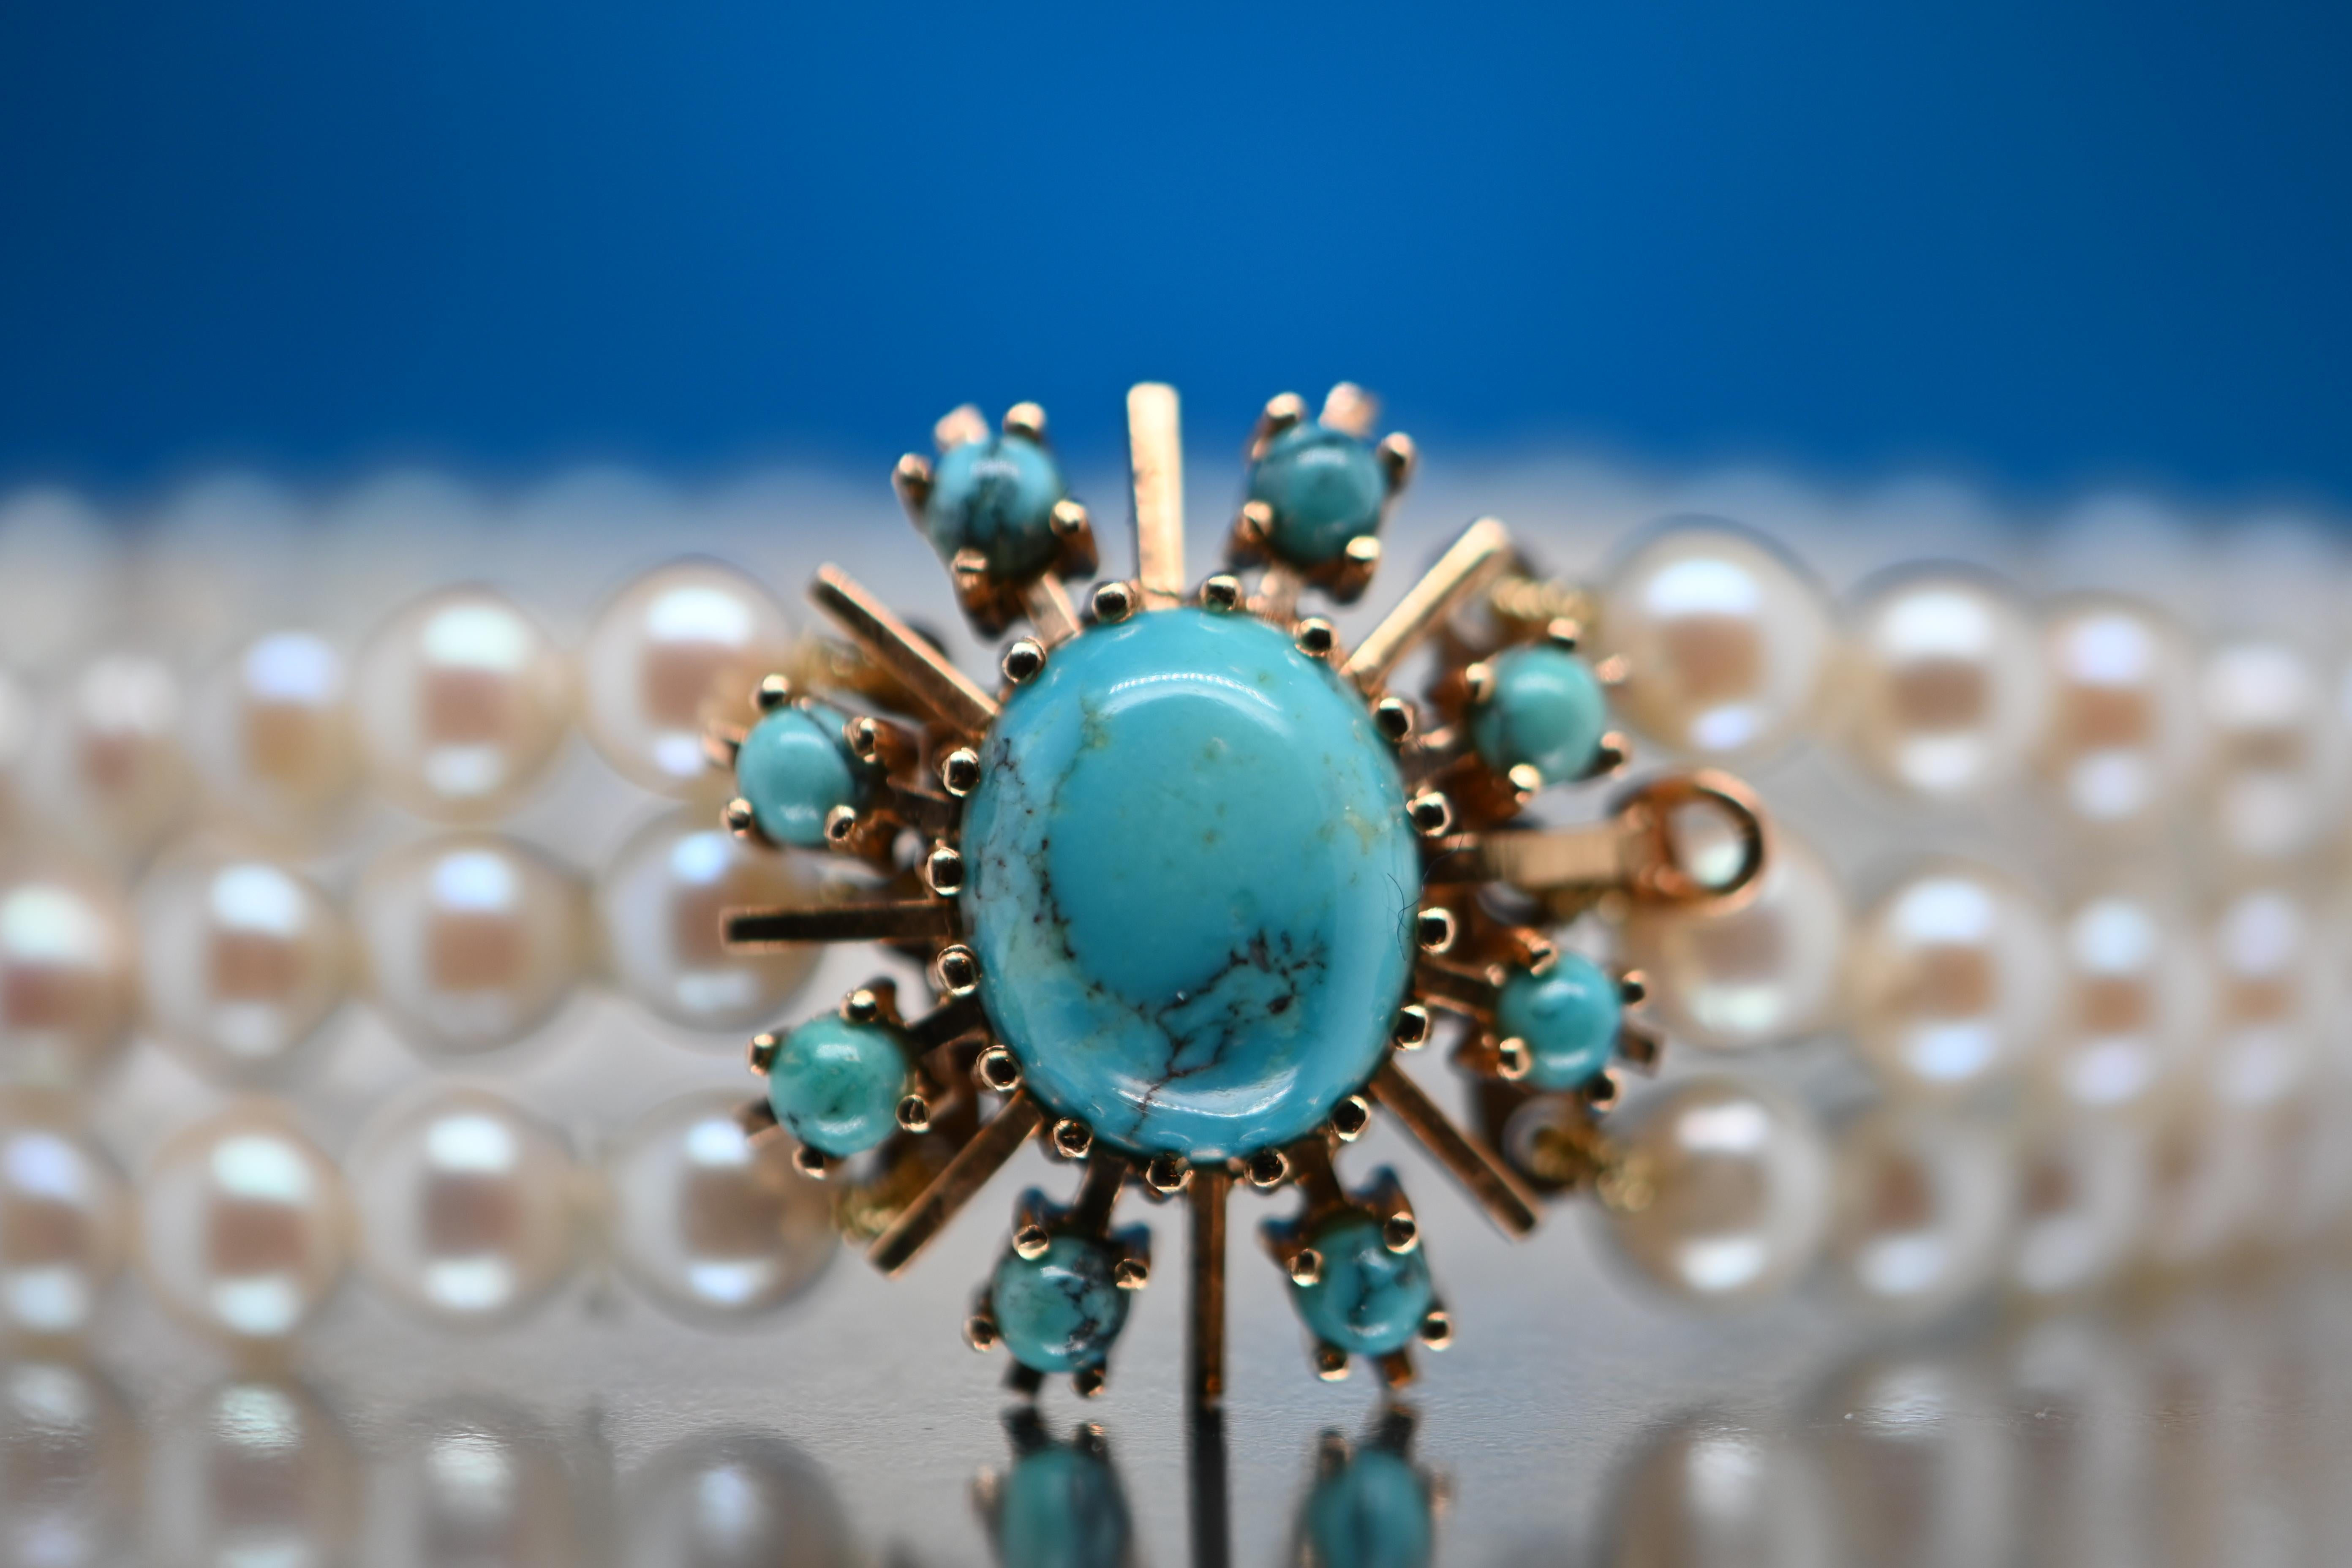 Dieses Armband besteht aus 9 exquisiten Türkisperlen und 90 Akoyaperlen von außergewöhnlicher Qualität und ist ein einzigartiges Meisterwerk, das alle Blicke auf sich ziehen wird. Jede Akoya-Perle wurde sorgfältig nach ihrer Größe, ihrer perfekten